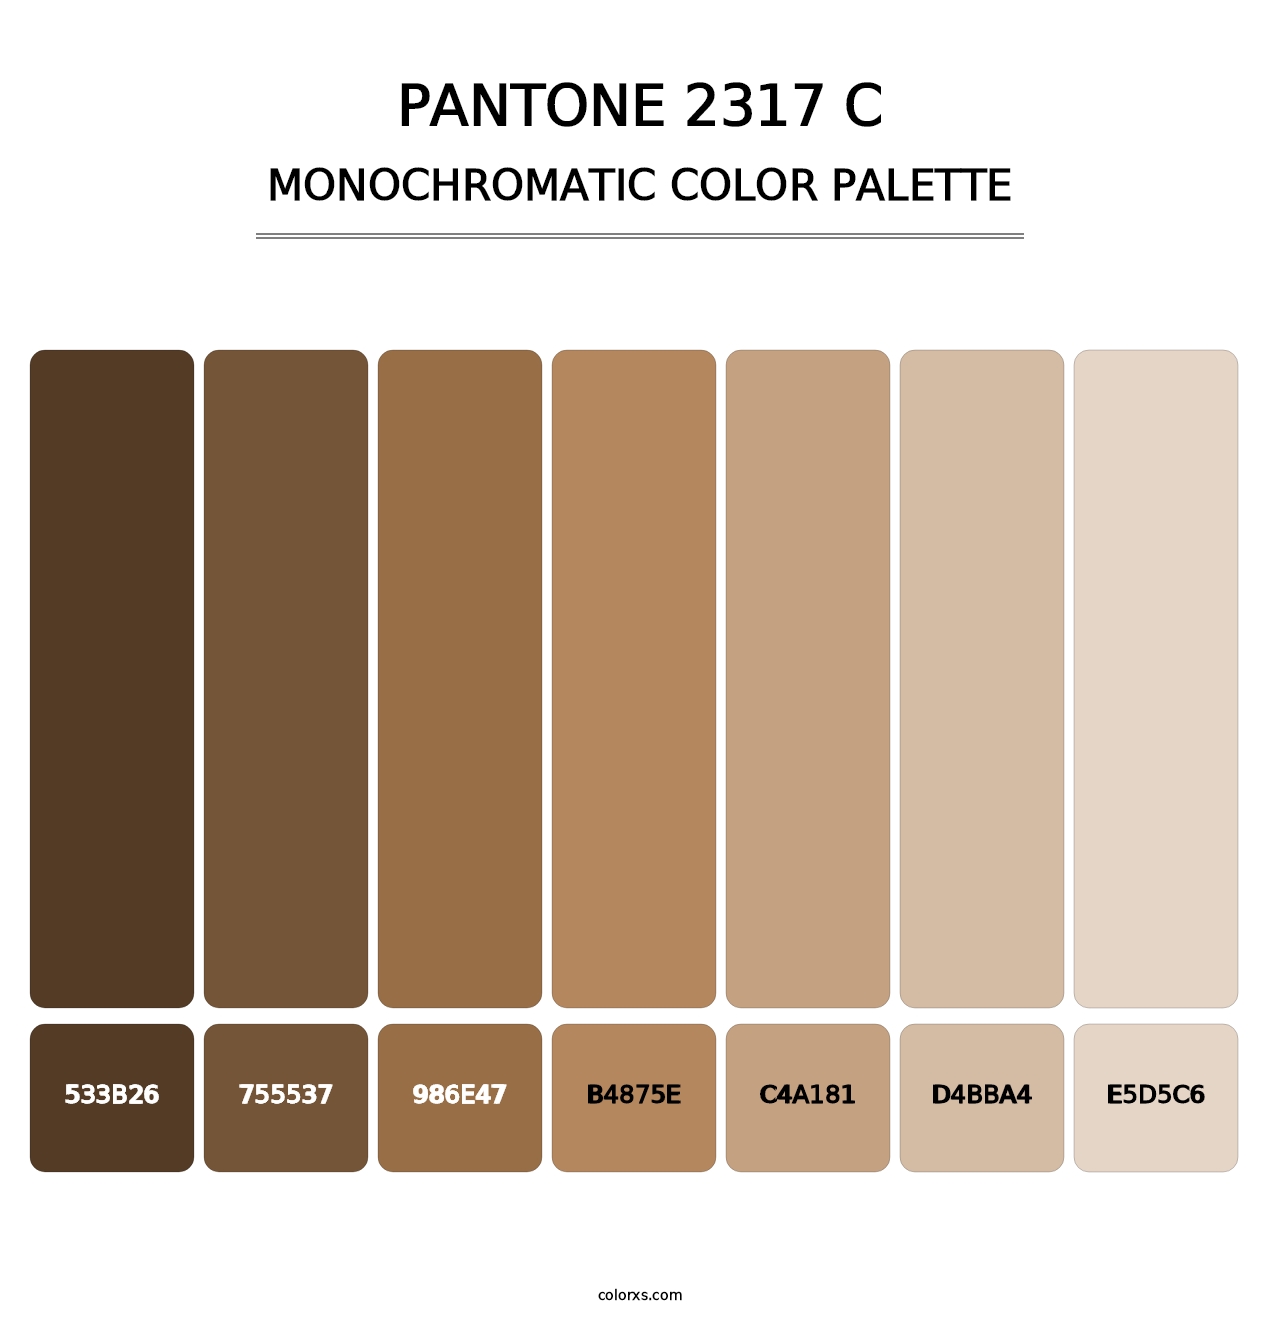 PANTONE 2317 C - Monochromatic Color Palette